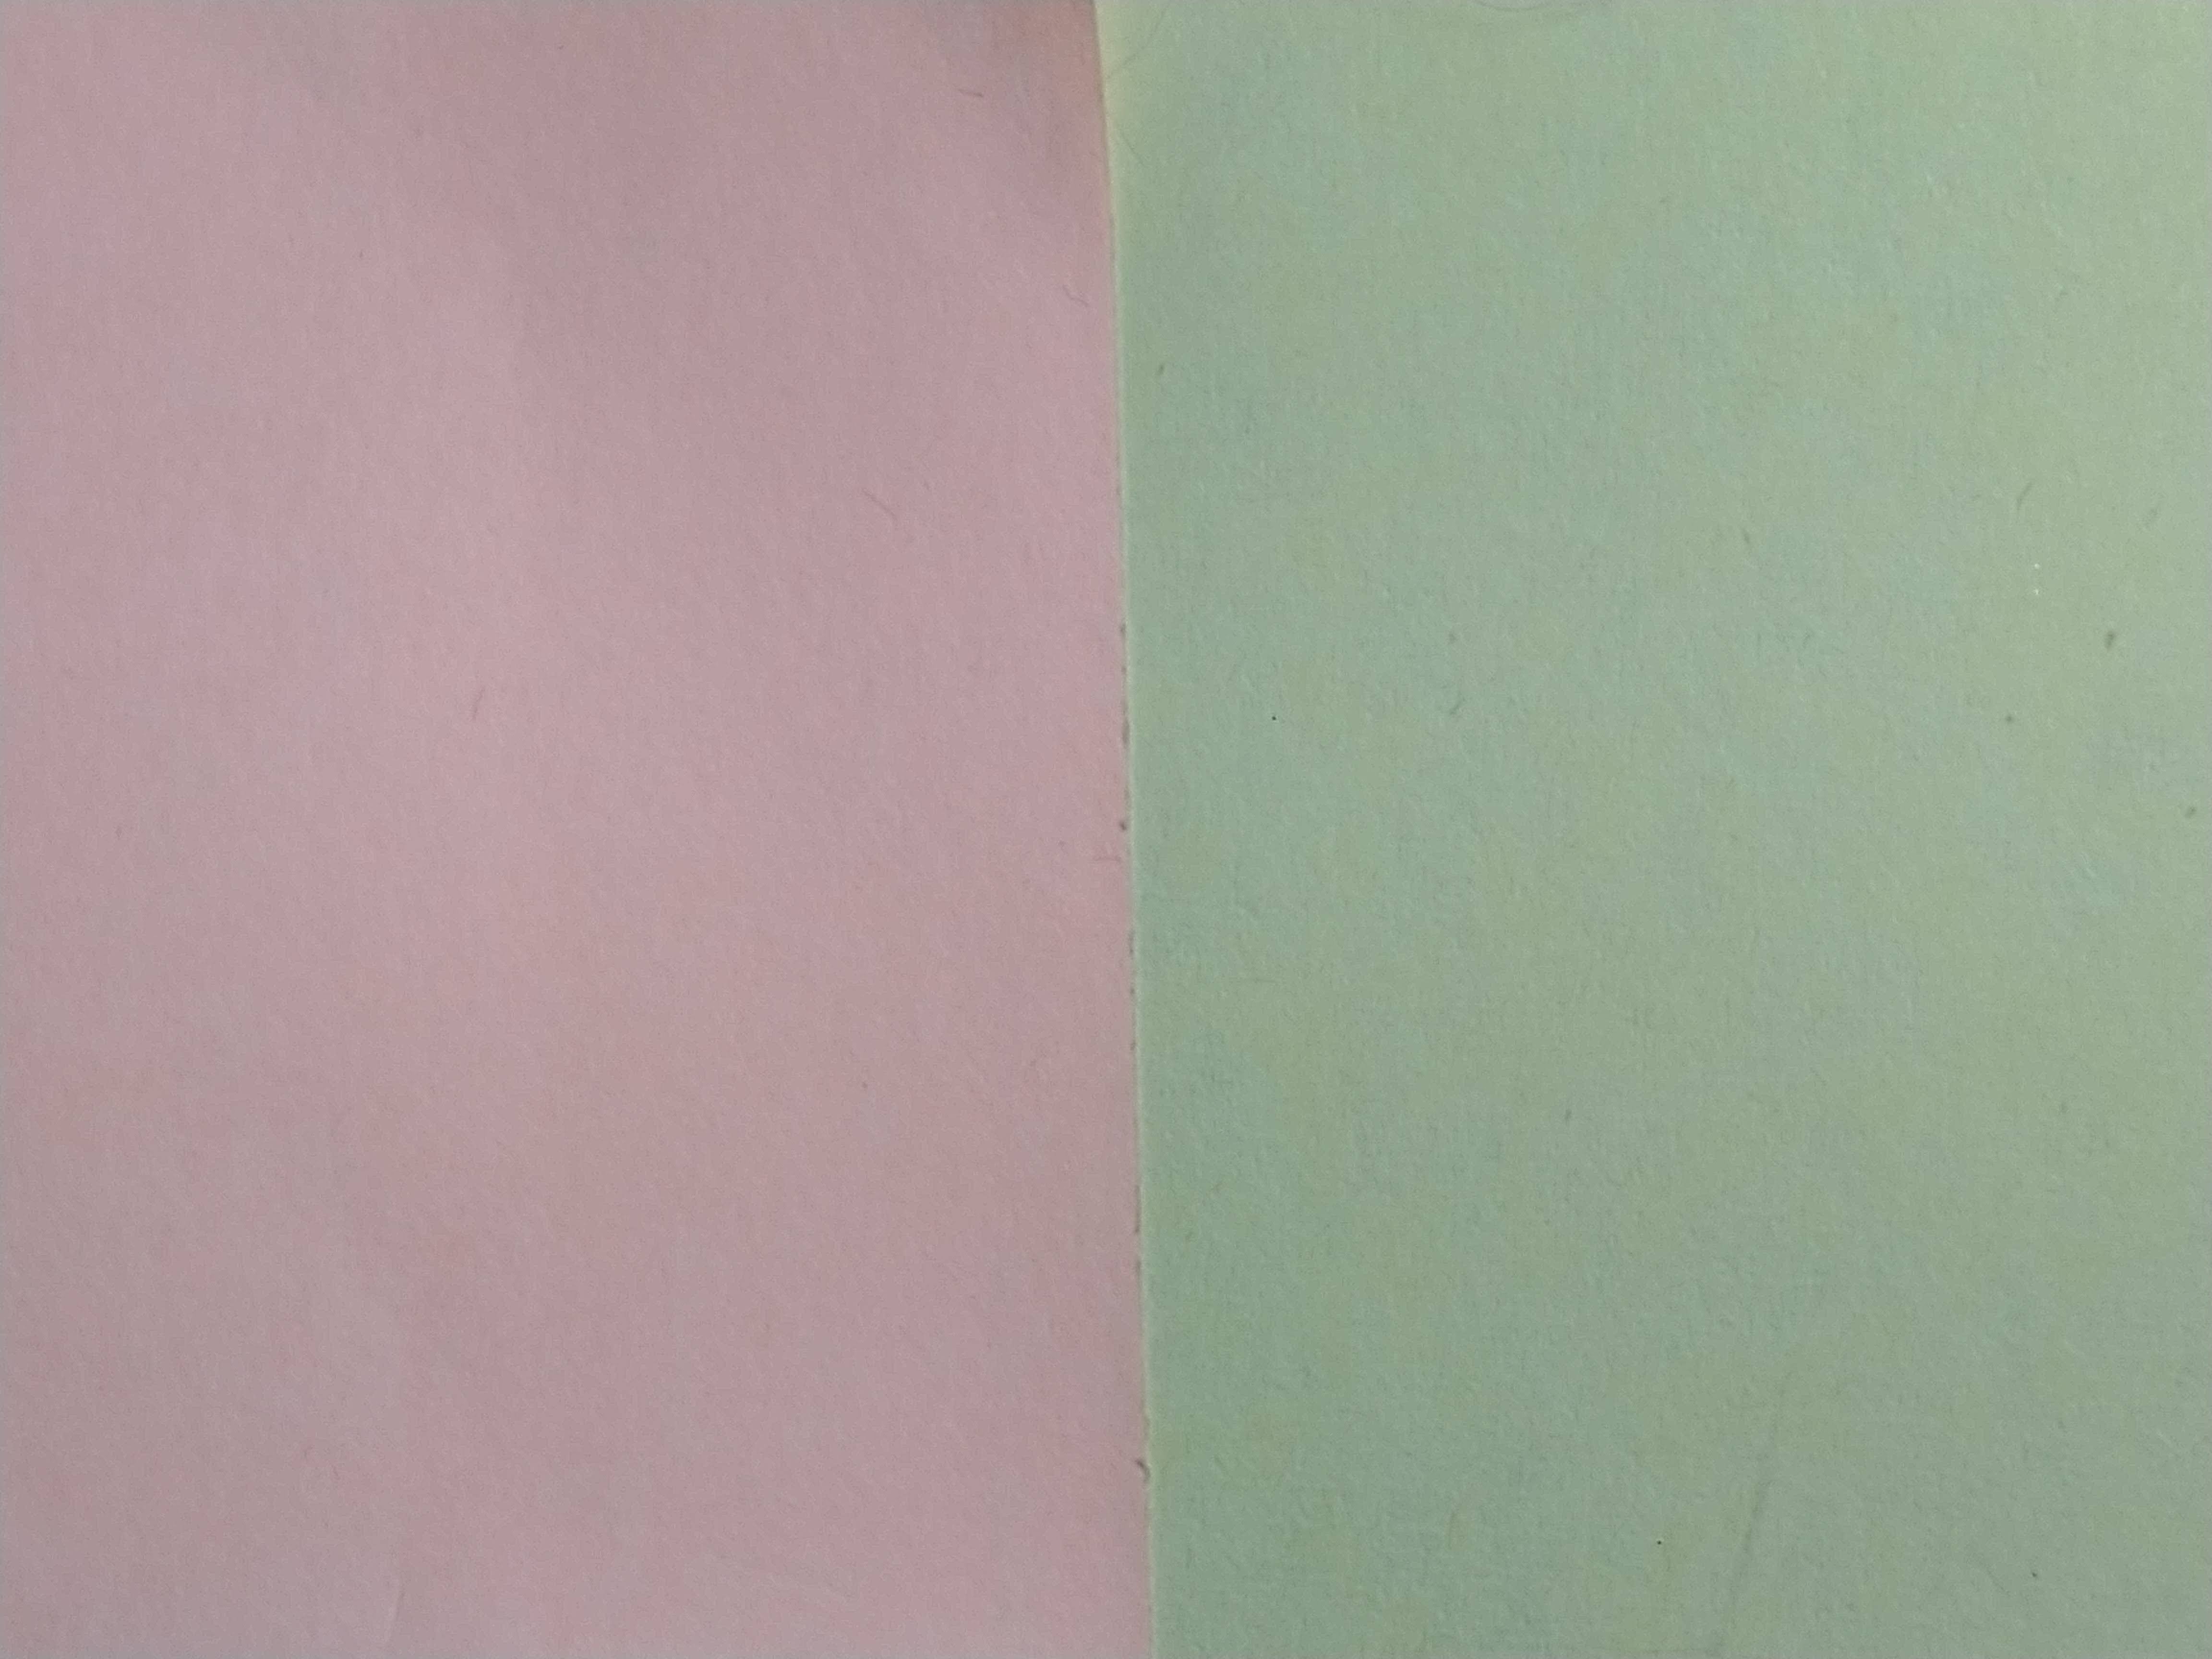 dos hojas de papel de colores muy claritos: una rosa casi blanco y otro verde tirando a gris.